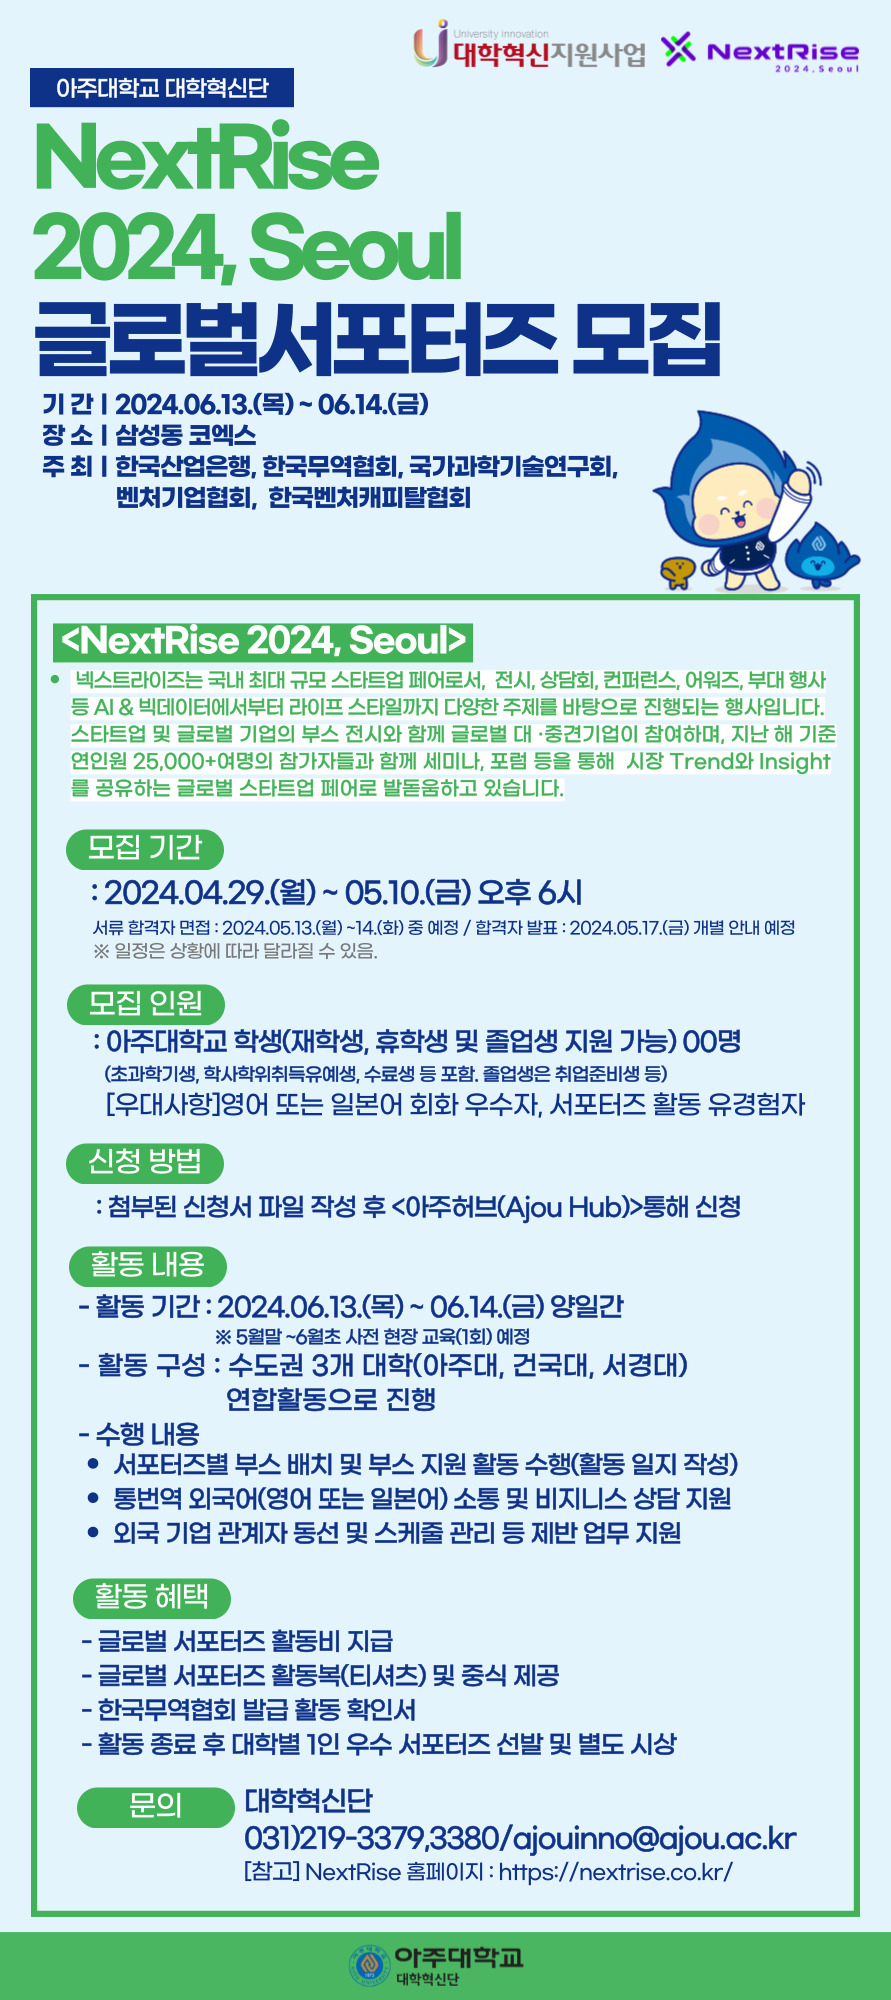 [대학혁신단] <NextRise 2024, Seoul> 글로벌 서포터즈 모집